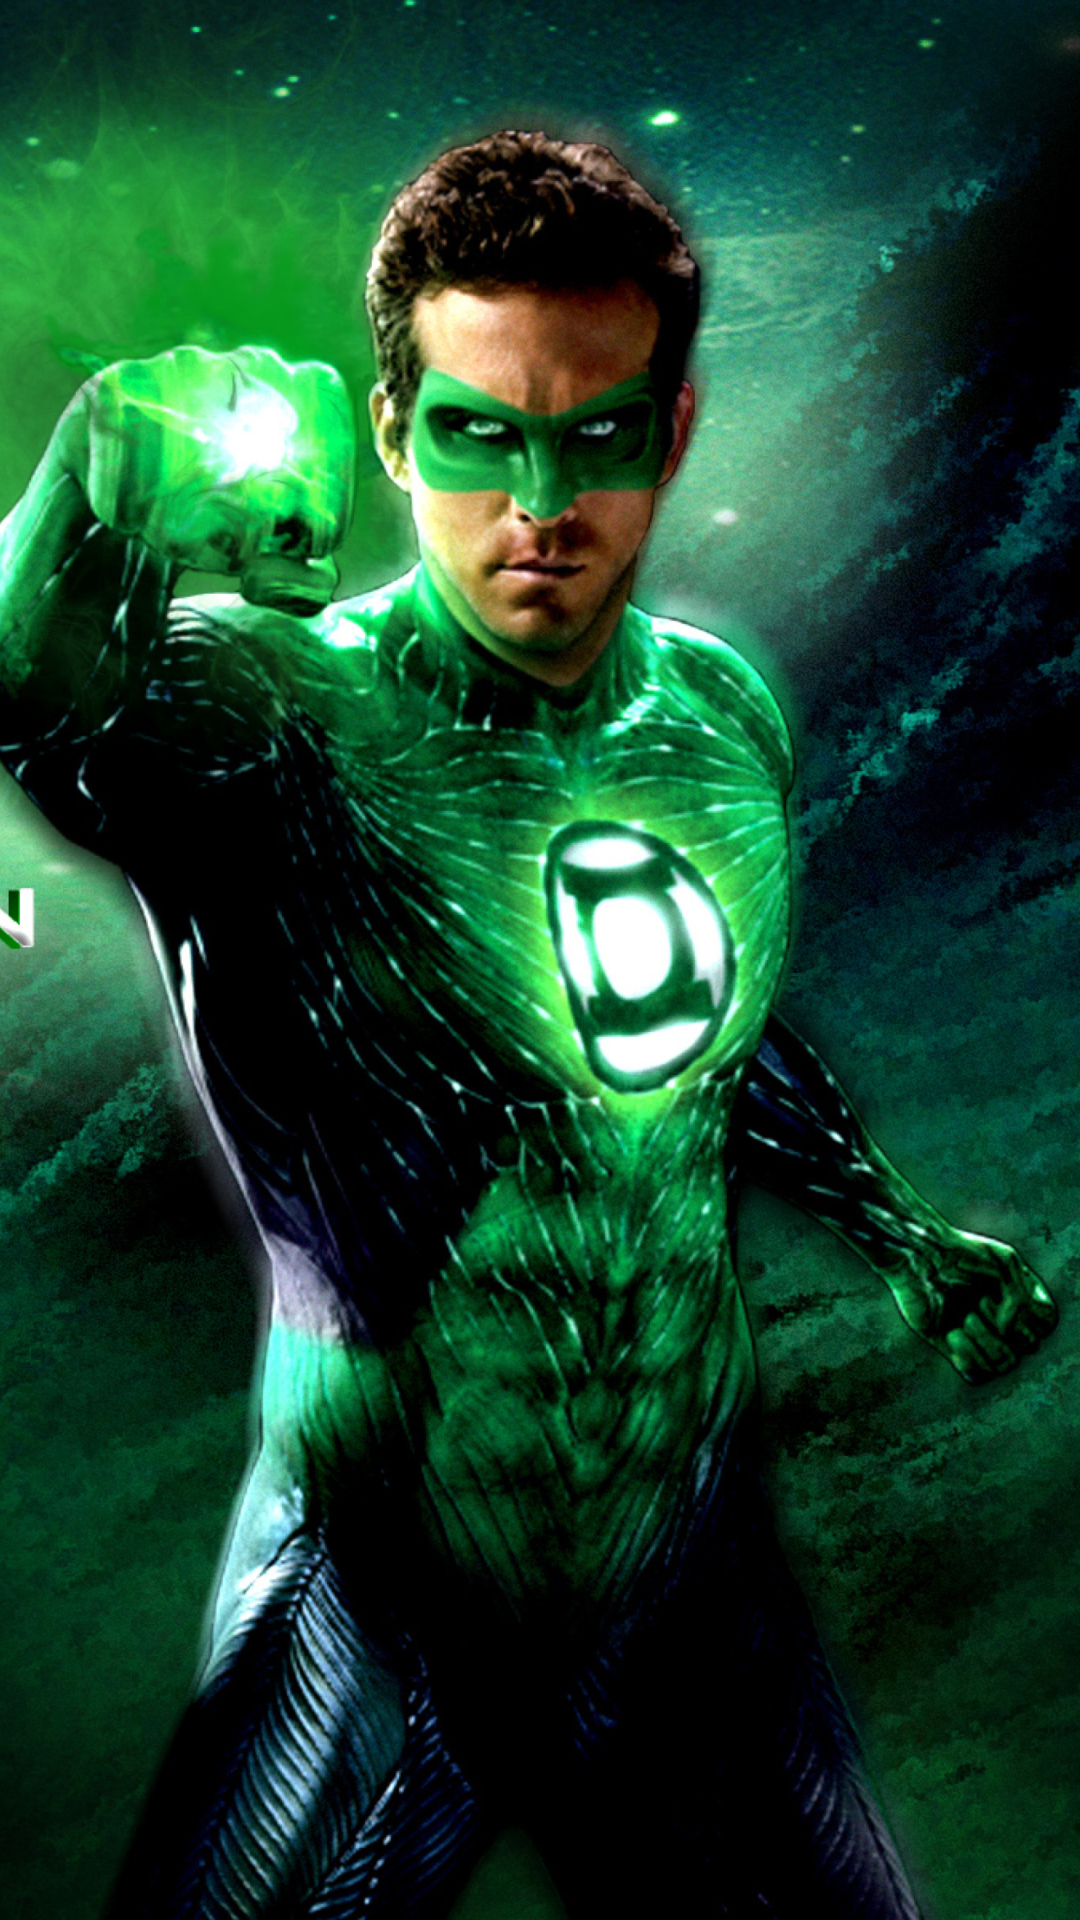 linterna verde fondo de pantalla para iphone,linterna verde,personaje de ficción,superhéroe,liga de la justicia,película